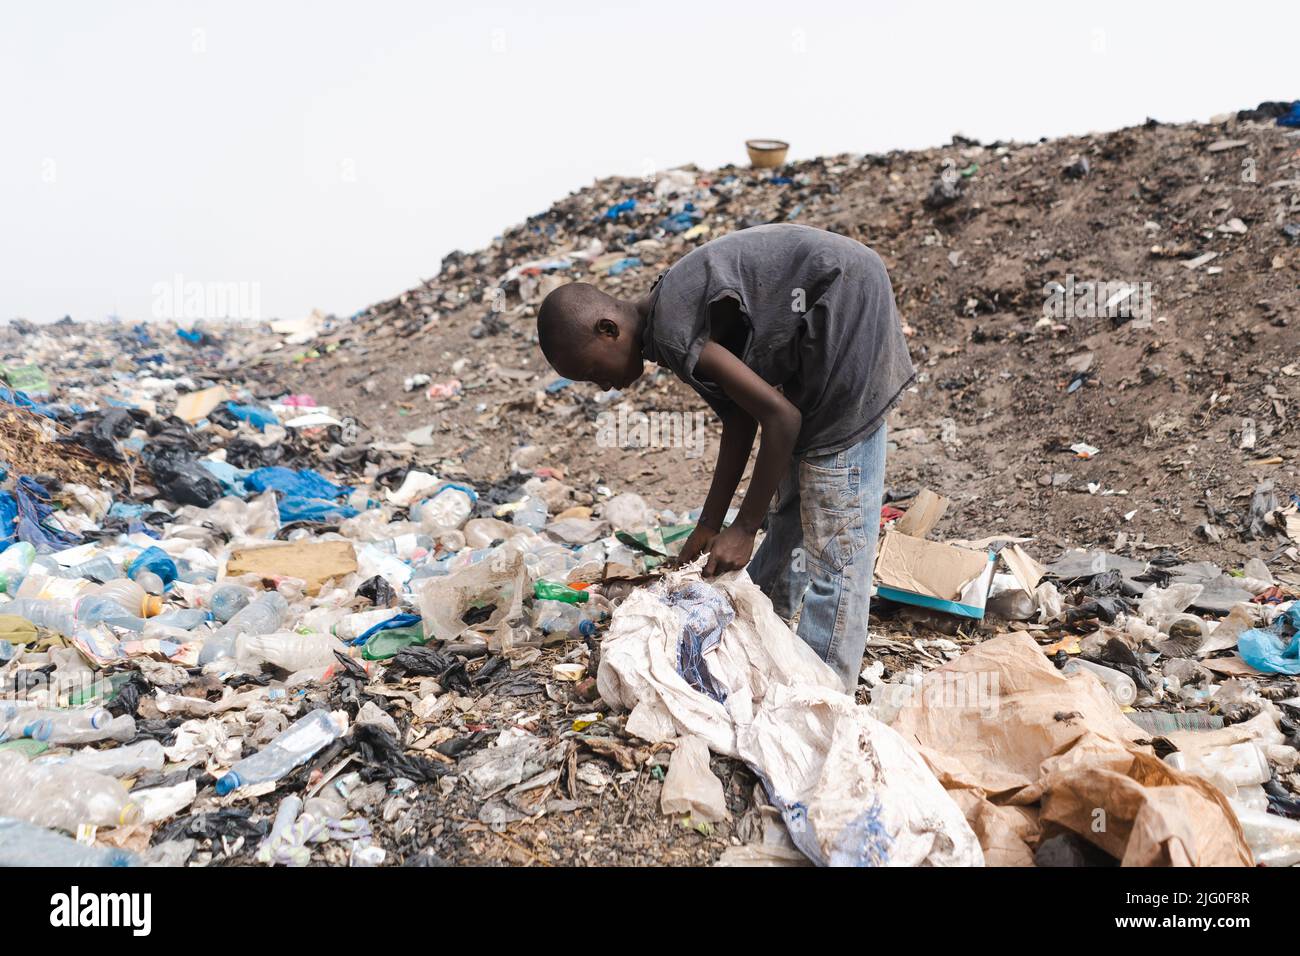 Jeune collecteur africain de déchets remplissant un sac en plastique avec des objets réutilisables dans une décharge urbaine; concept informel de recyclage des déchets Banque D'Images